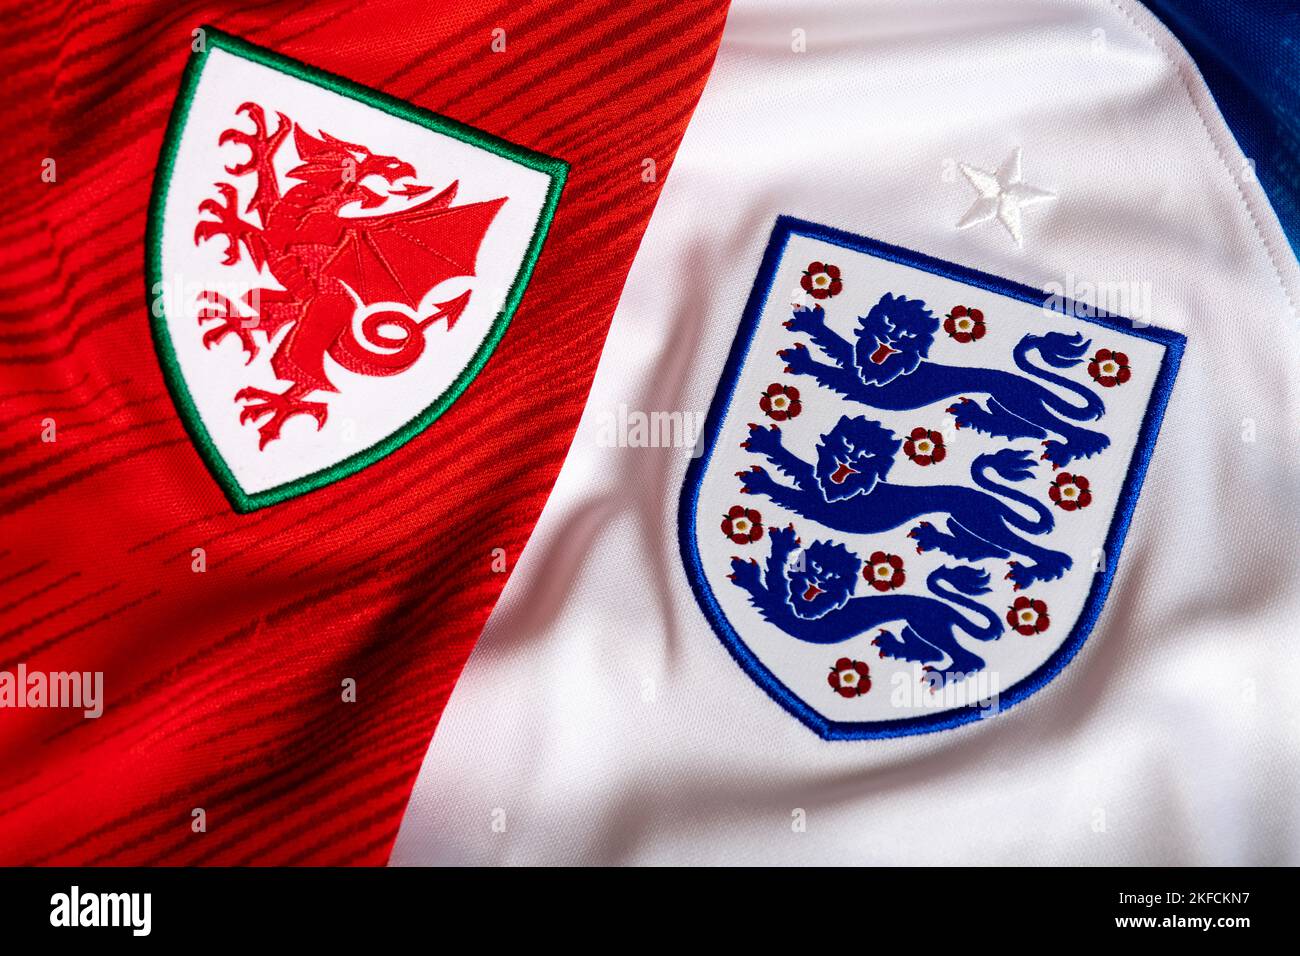 Gros plan sur le maillot du pays de Galles et de l'Angleterre. Coupe du monde de la FIFA 2022 Qatar. Banque D'Images